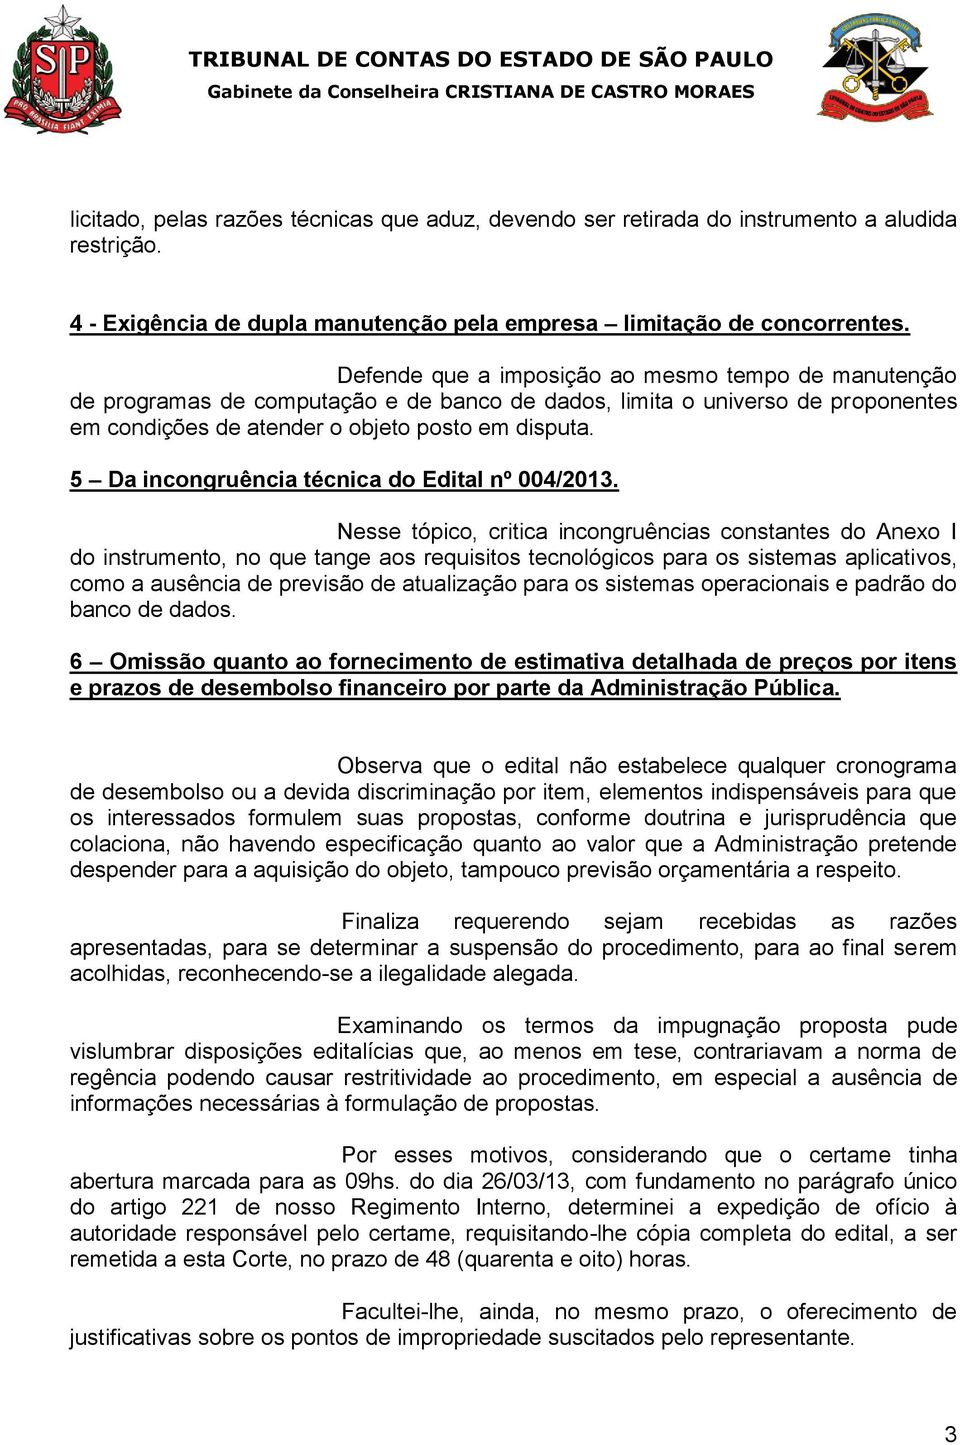 5 Da incongruência técnica do Edital nº 004/2013.